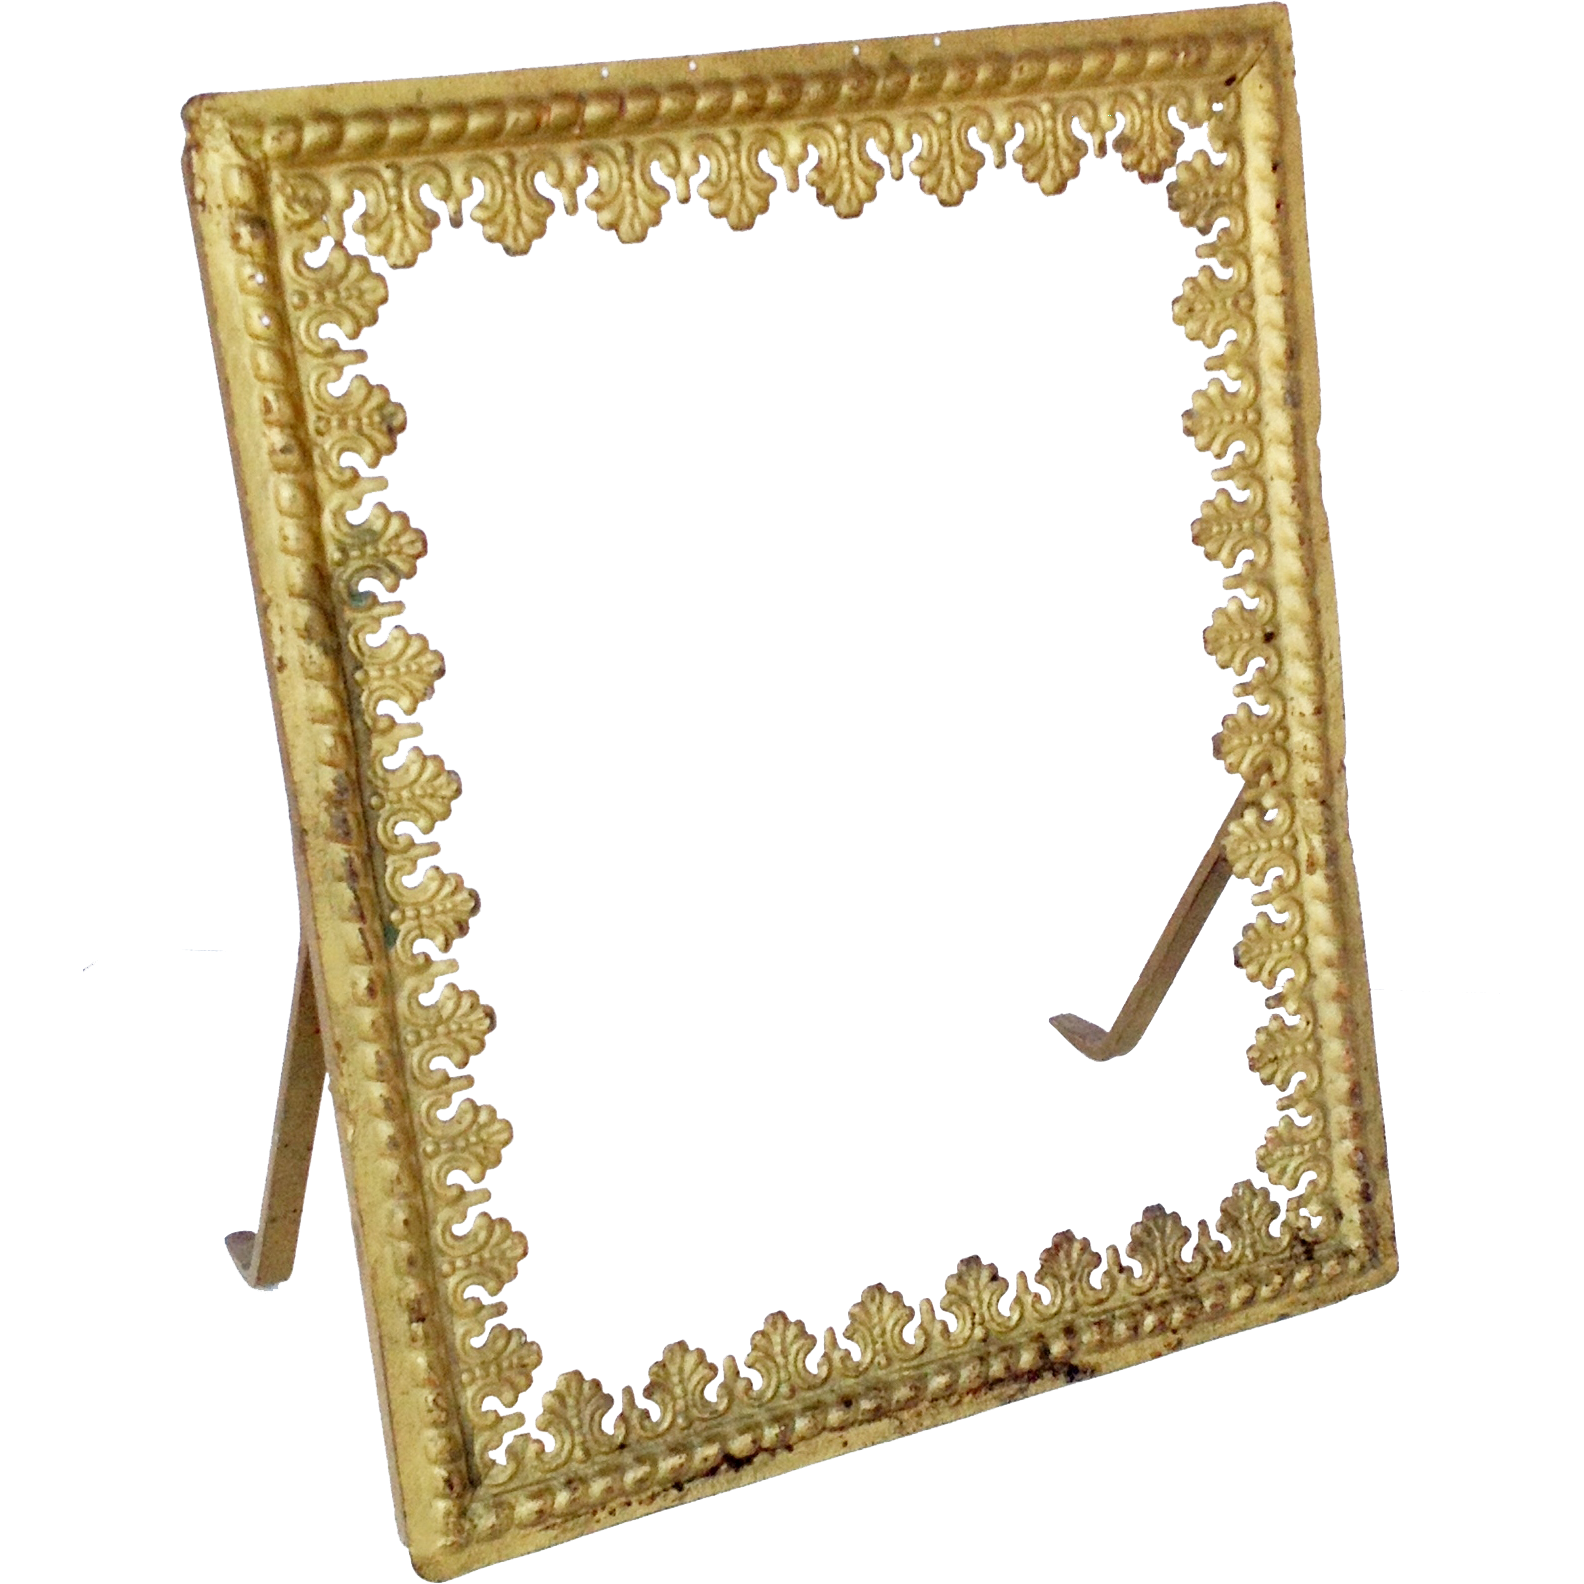 Золотое зеркало рамки PNG изображения фон